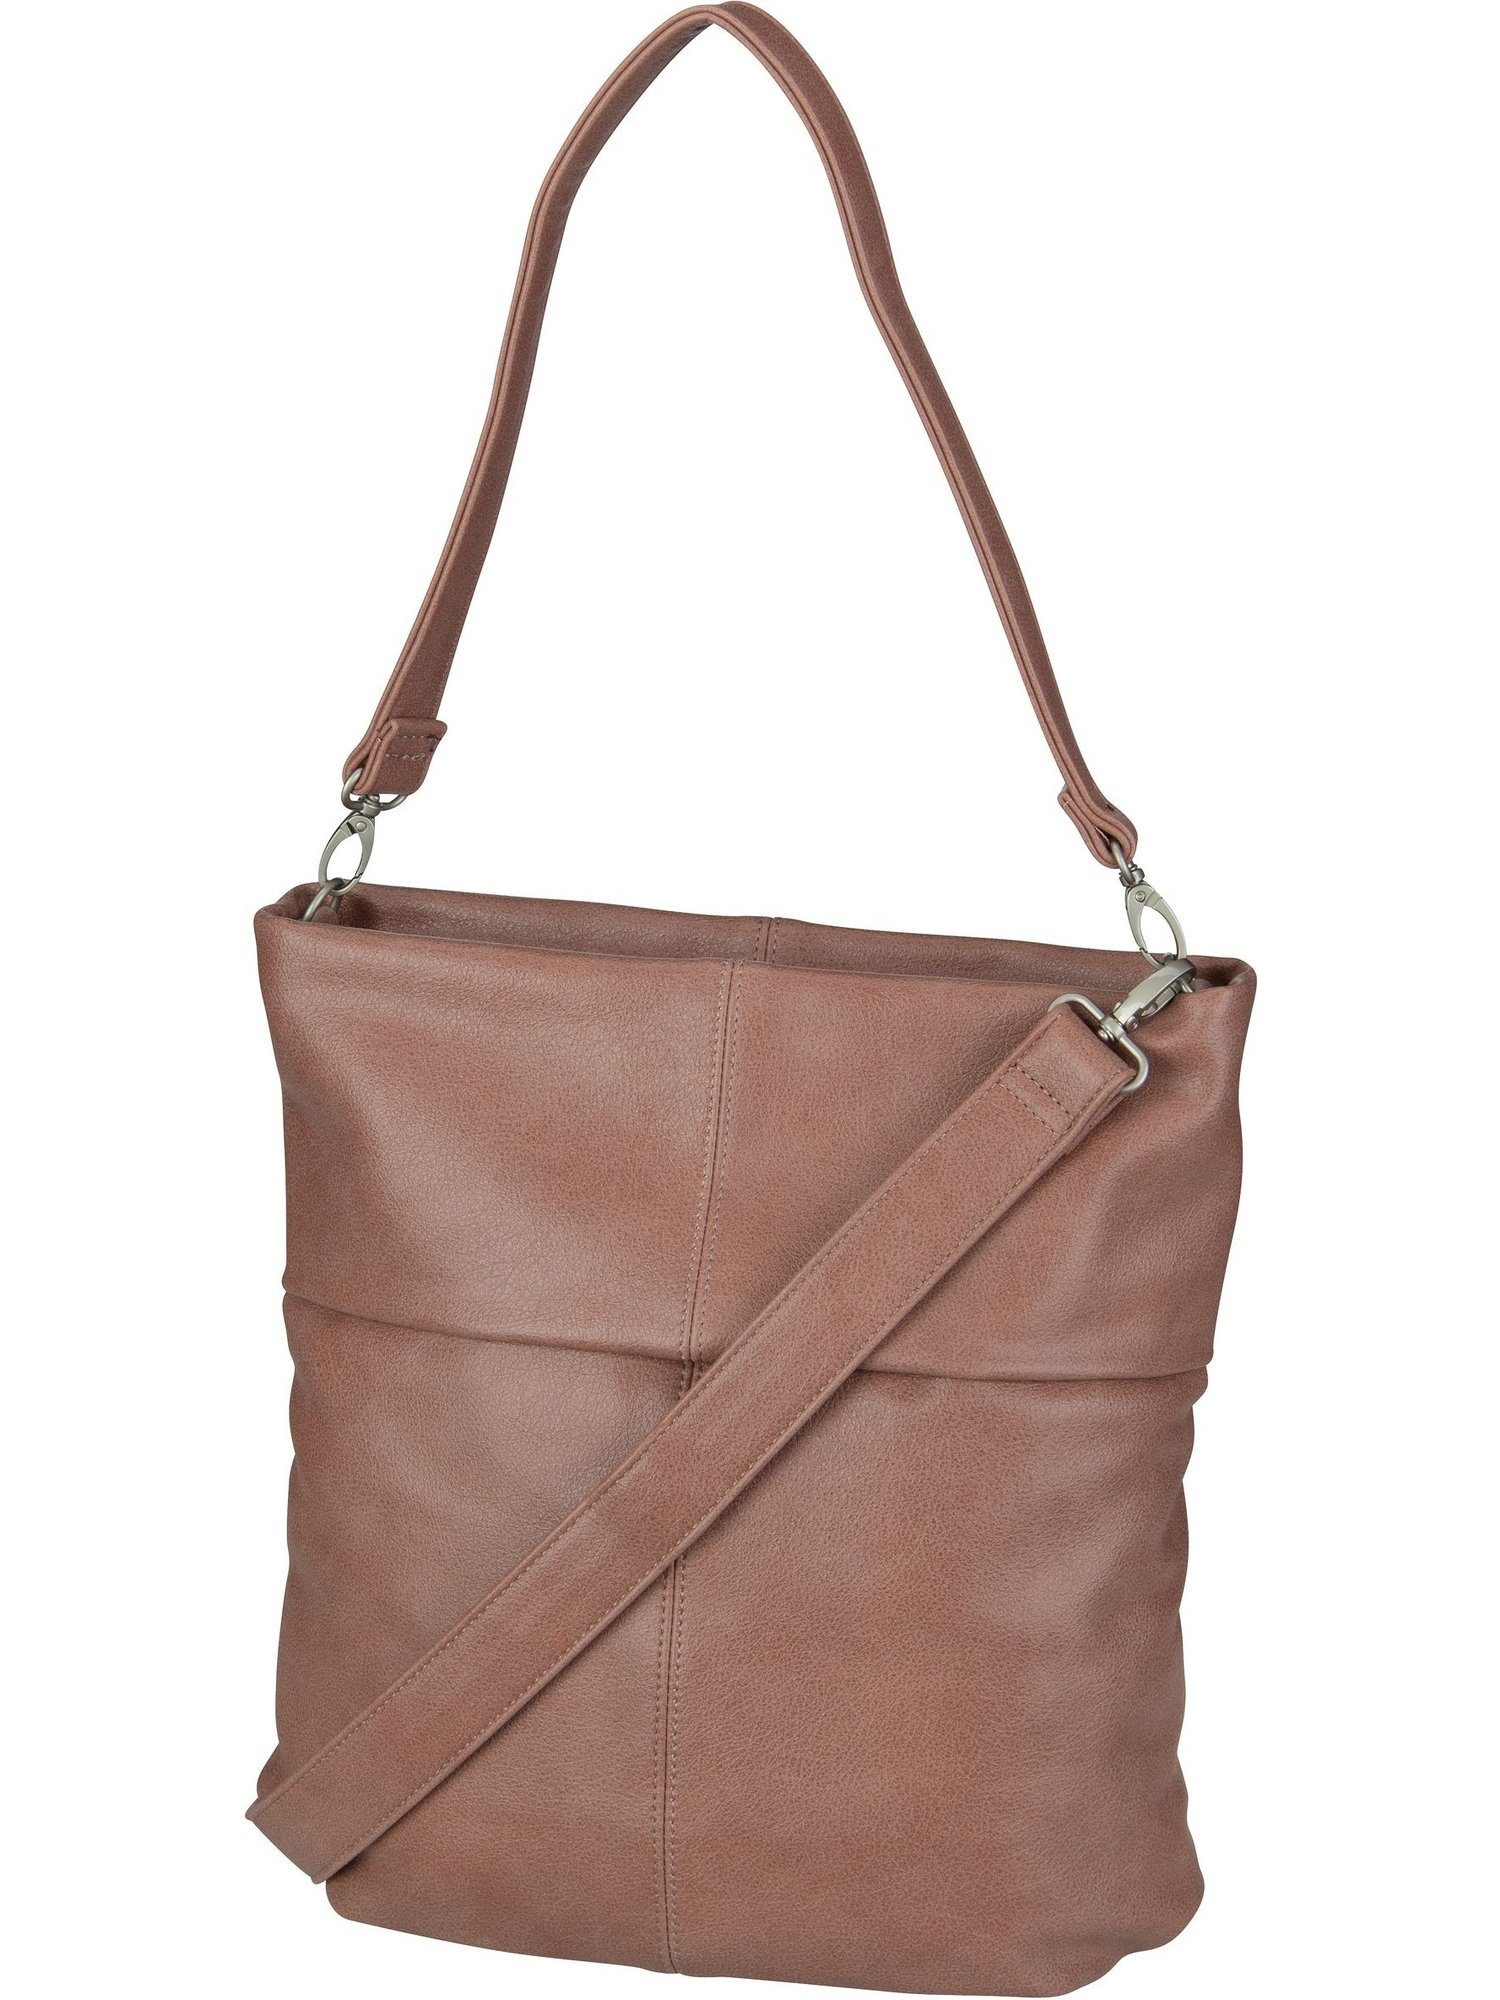 Blush Mademoiselle Bag M12, Hobo Zwei Handtasche